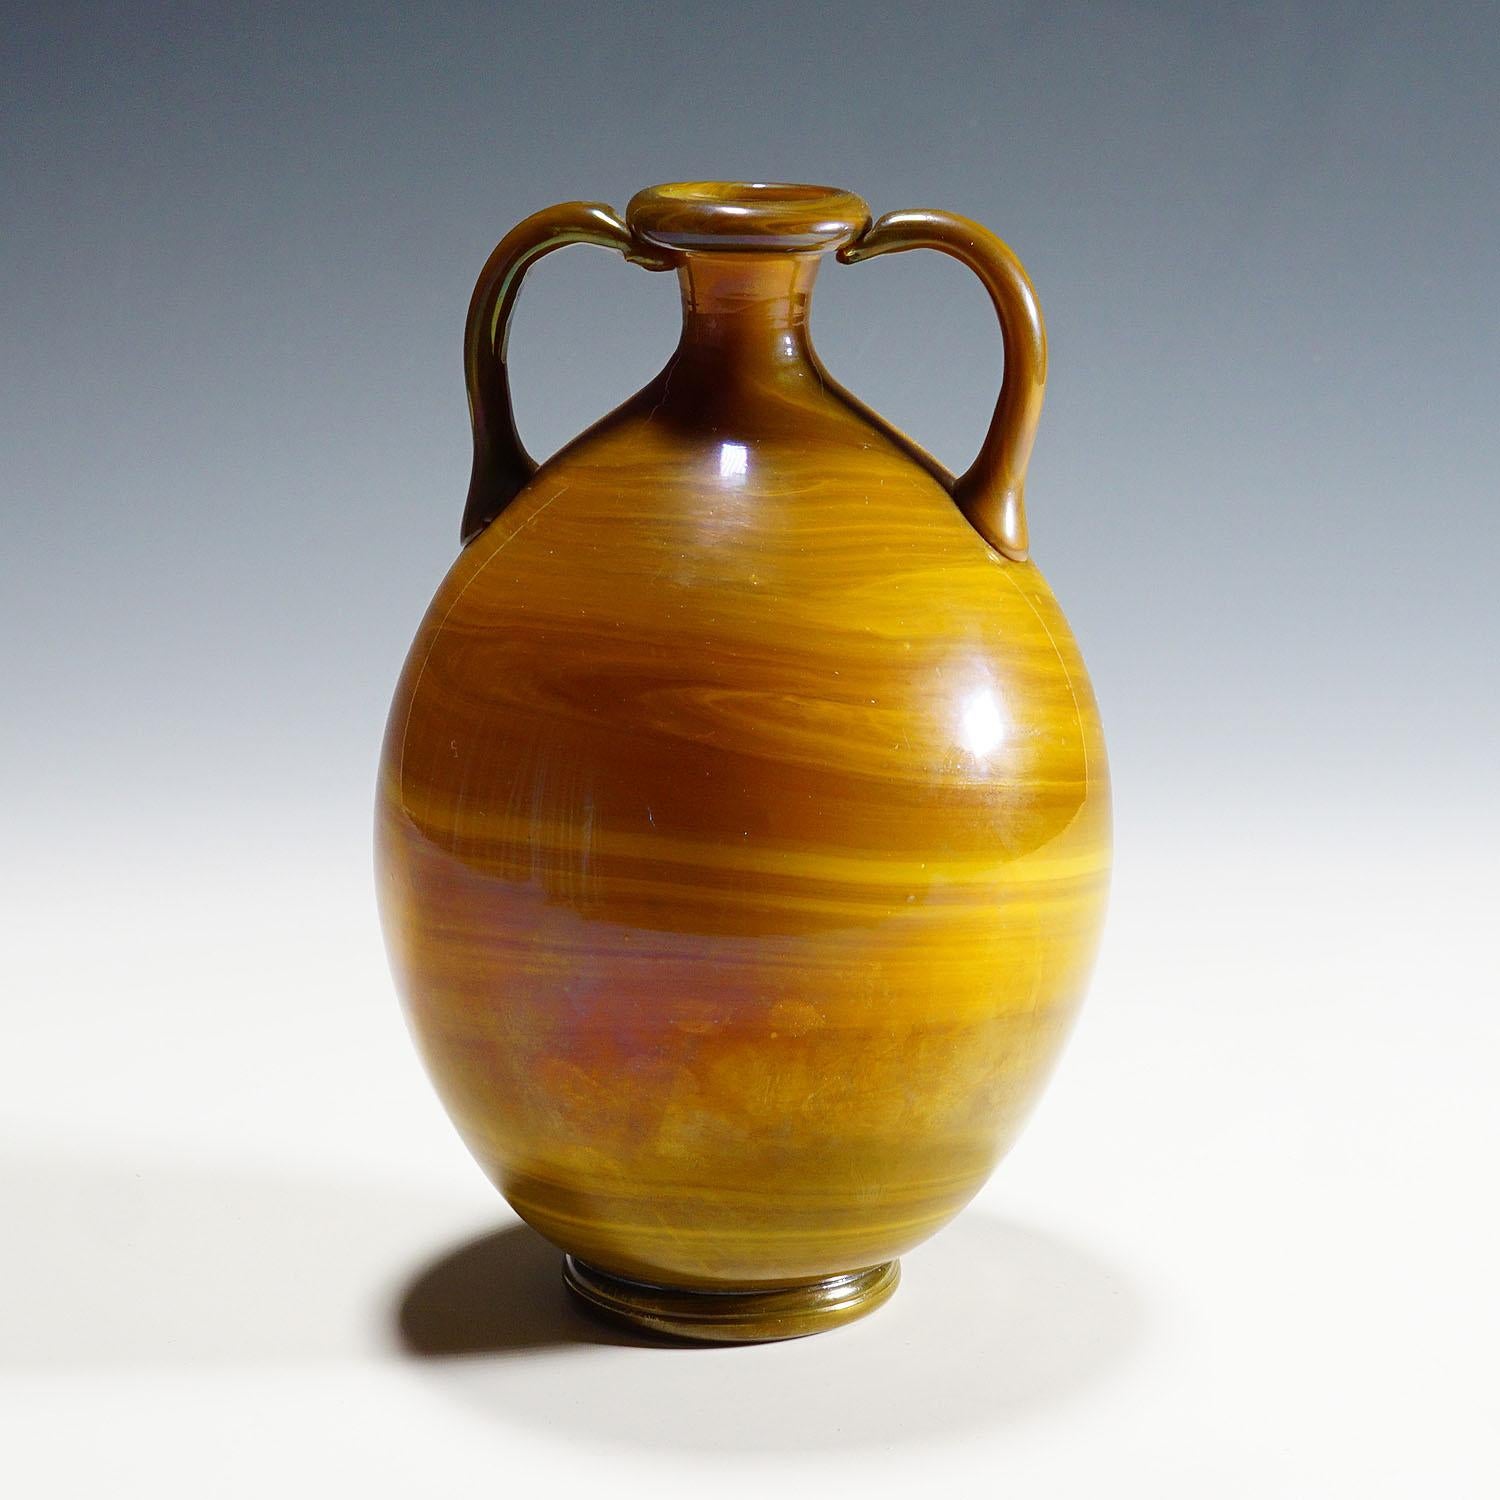 Vetro calcedonio Vase von Napoleone Martinuzzi für Venini Murano ca. 1930er Jahre.

Eine sehr seltene Vase aus Murano-Glas, die Napoleone Martinuzzi um 1930 zugeschrieben wird. Hergestellt von Cappelin in den 1920er Jahren oder Venini in den 1930er